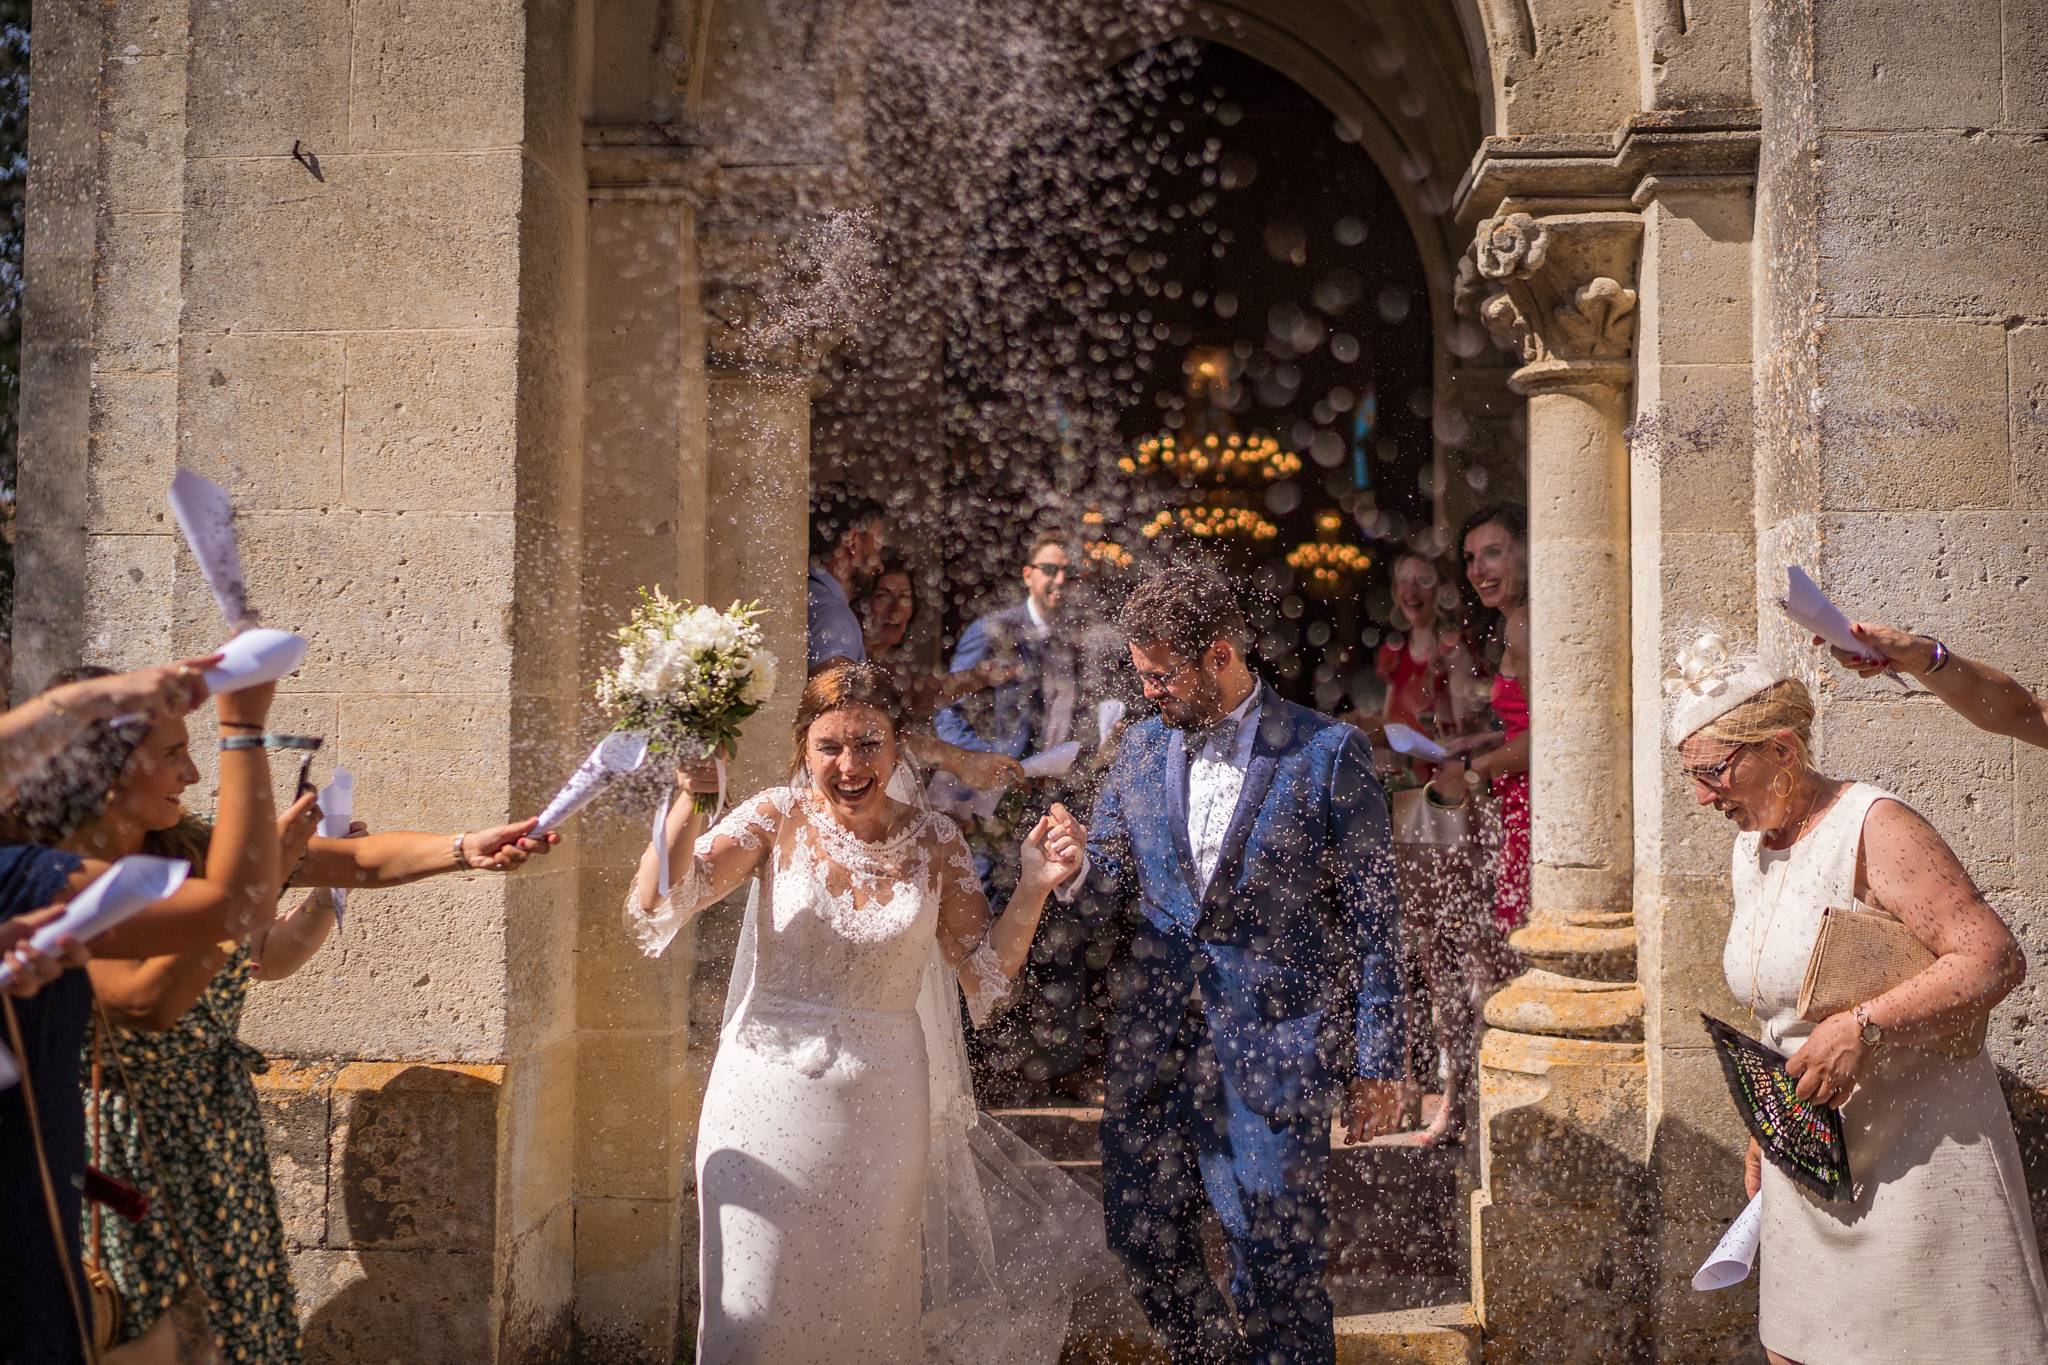 Le teaser du mariage civil et religieux de M+F à Salleboeuf puis au Château de La Loubière à Bonnetan. Alexandre Roschewitz Photographe Mariage.